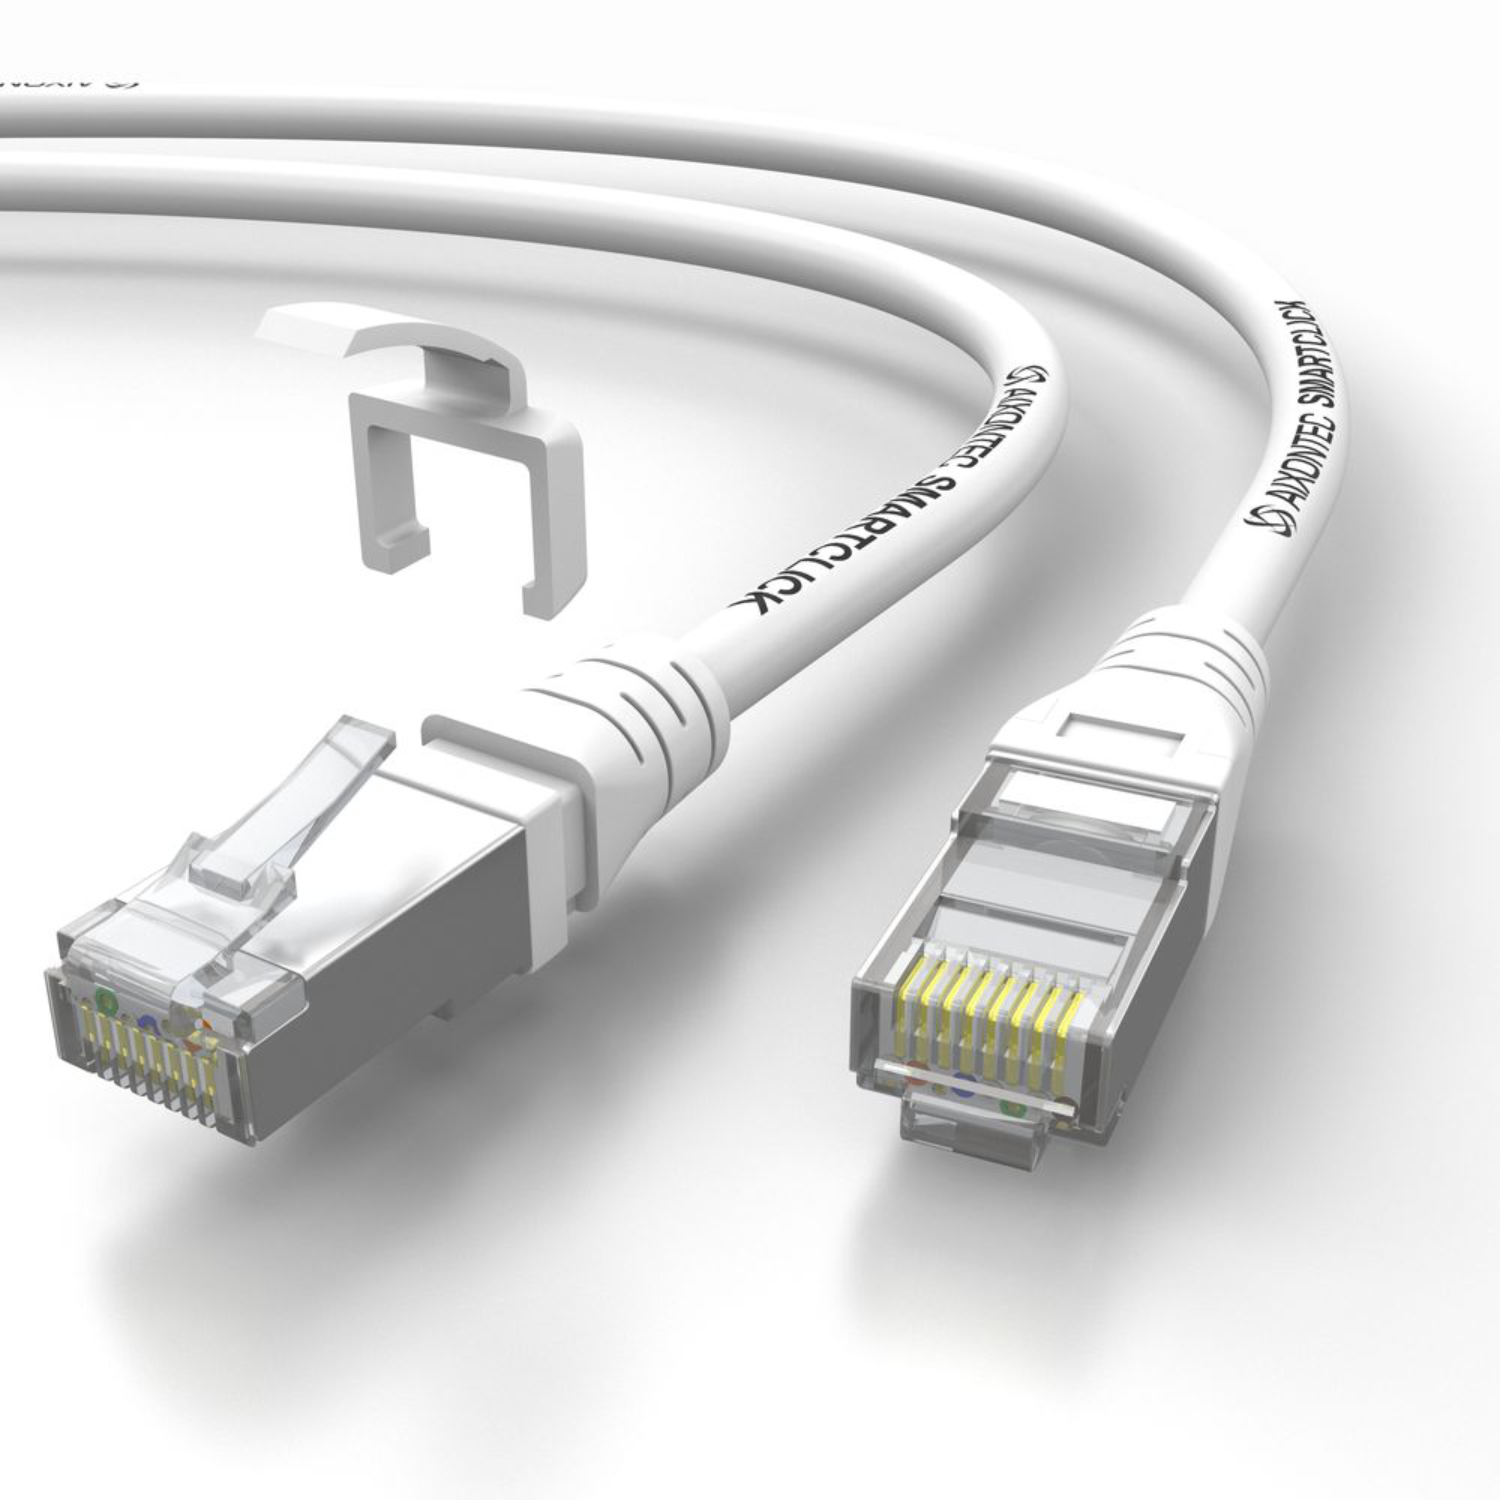 AIXONTEC 3,0m Cat.6A Lankabel m Netzwerkkabel, Patchkabel 3,0 Gigabit, RJ45 Ethernetkabel 10